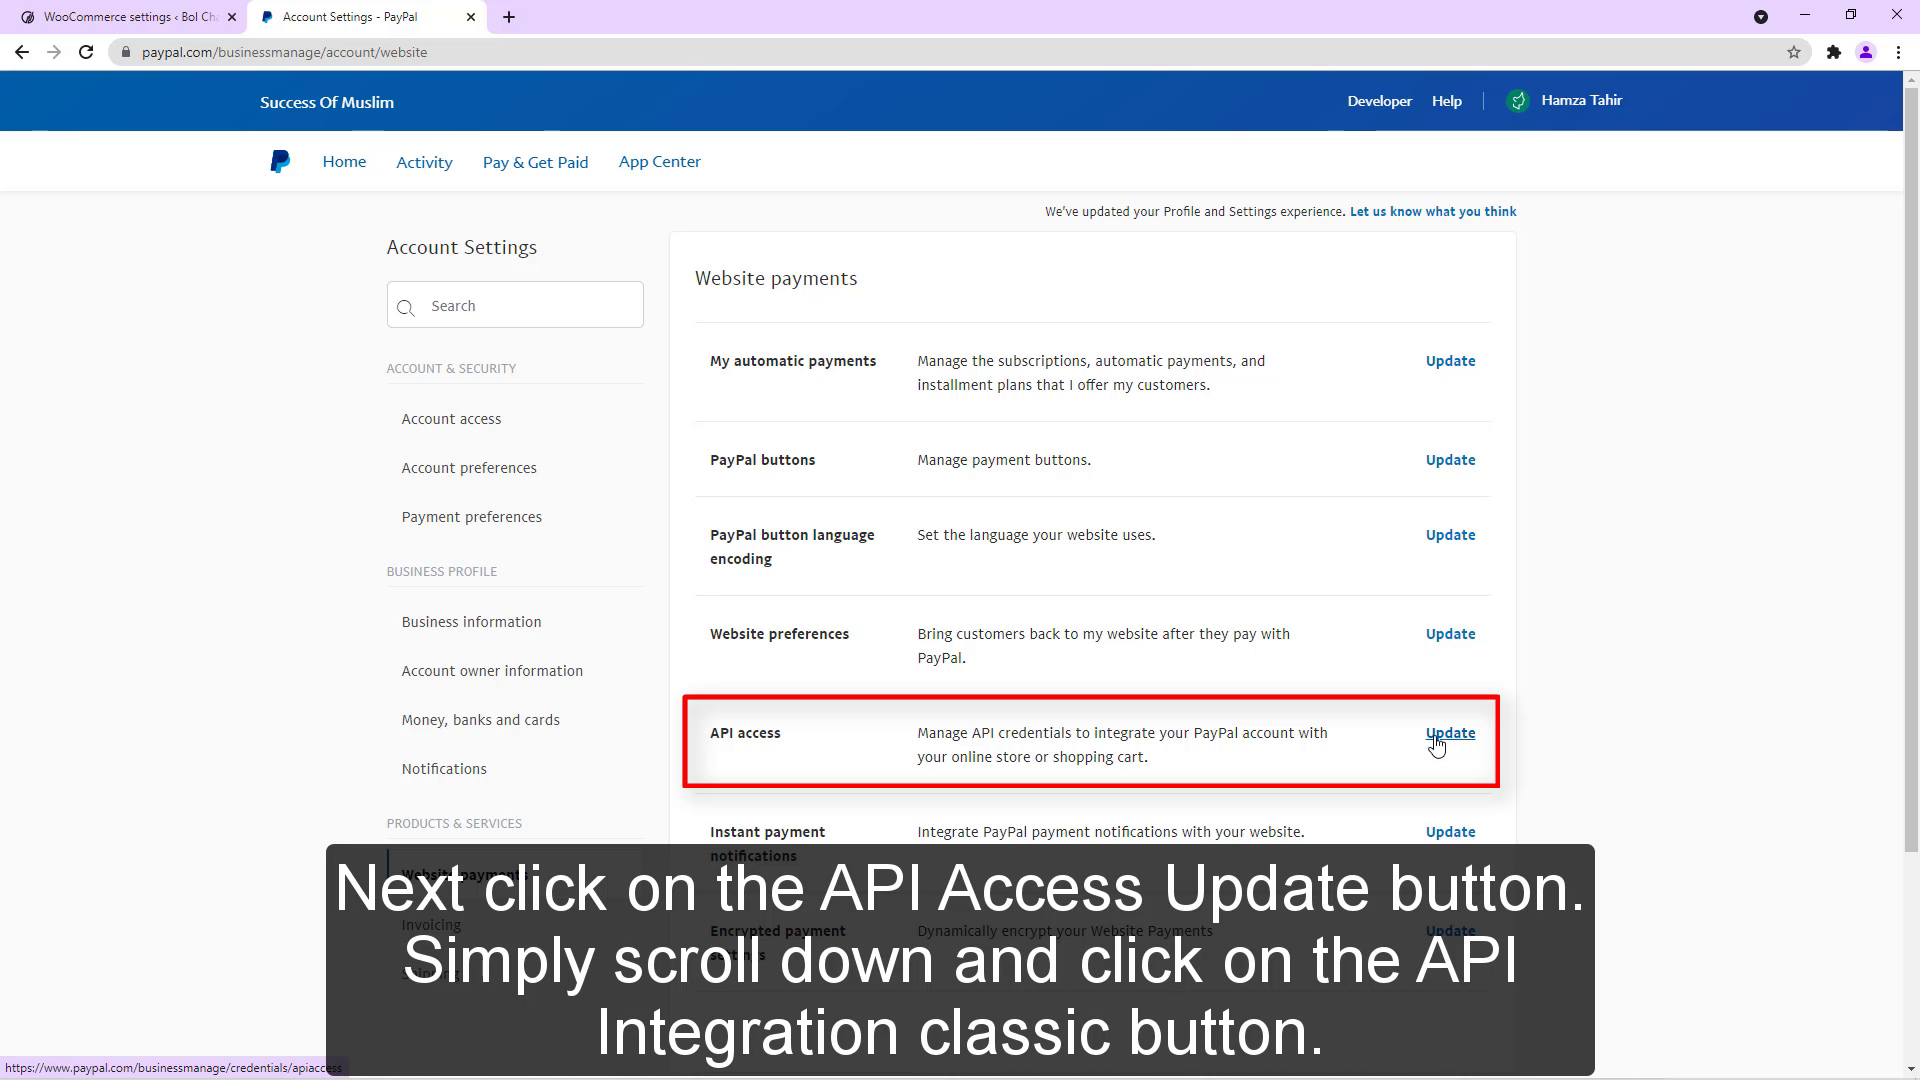 Siguiente, haga clic en el botón Actualizar API Access